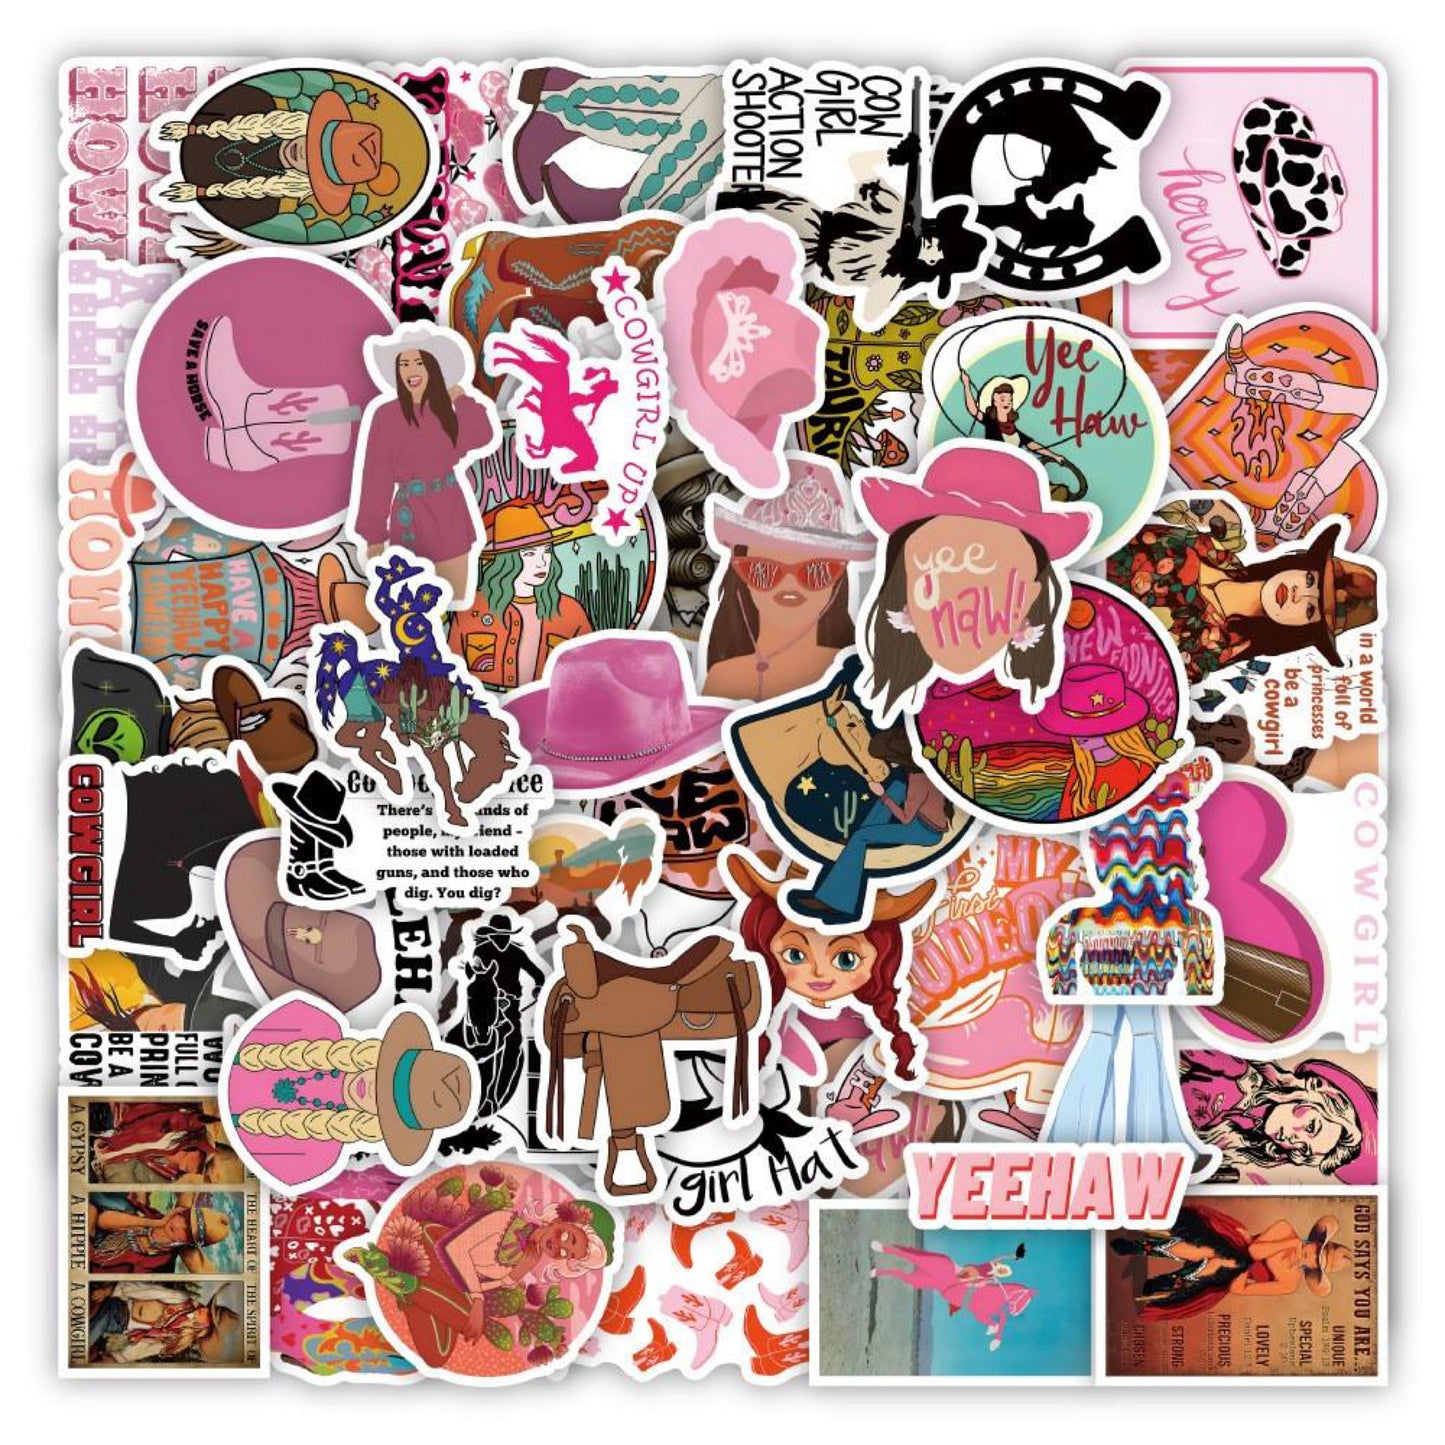 50 Piece Cowgirl Vinyl Stickers